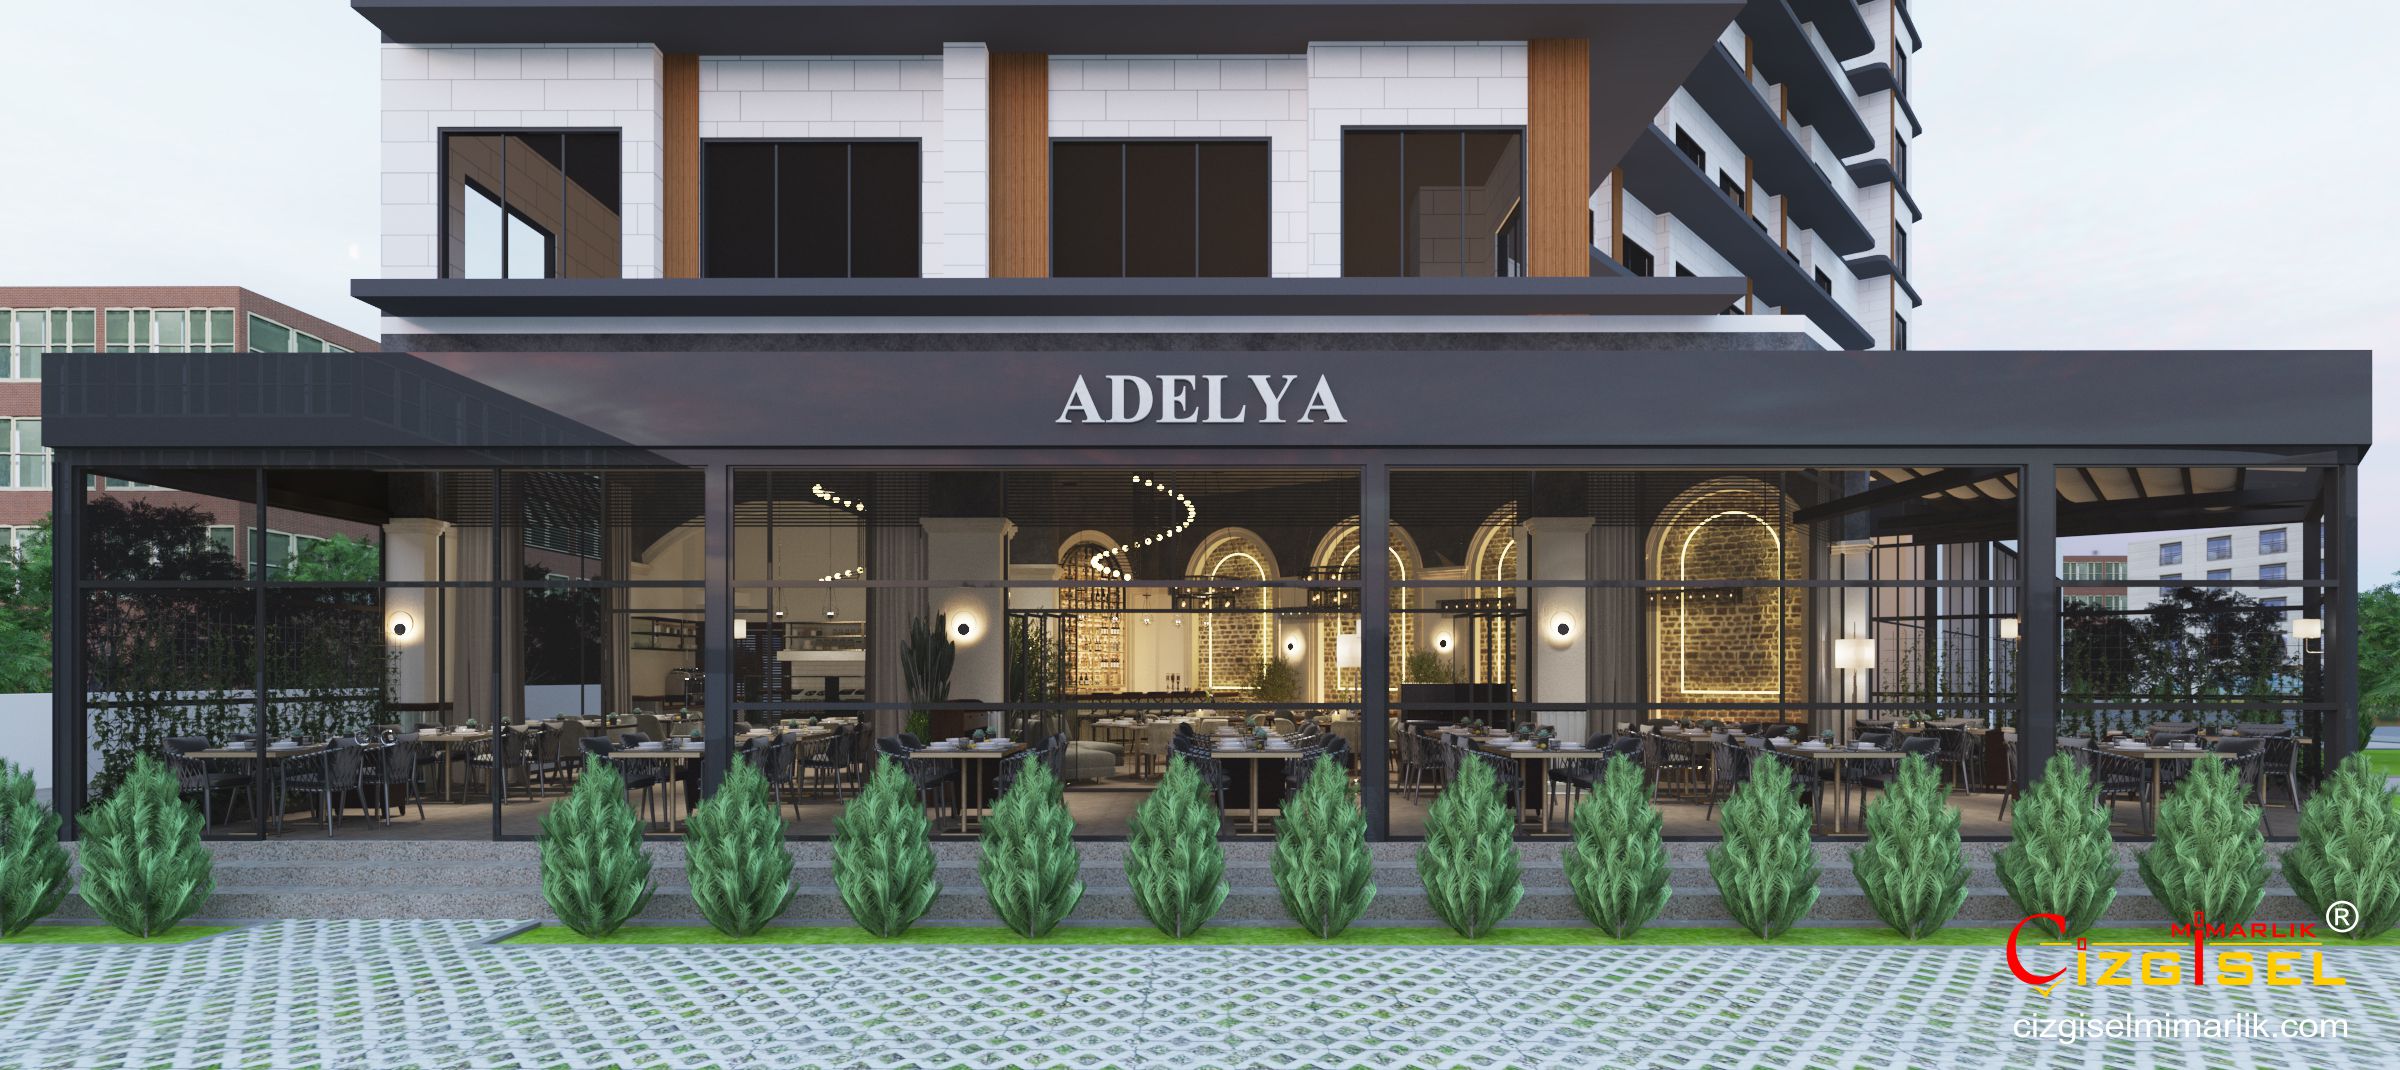 Adelya Restaurant & Bistro